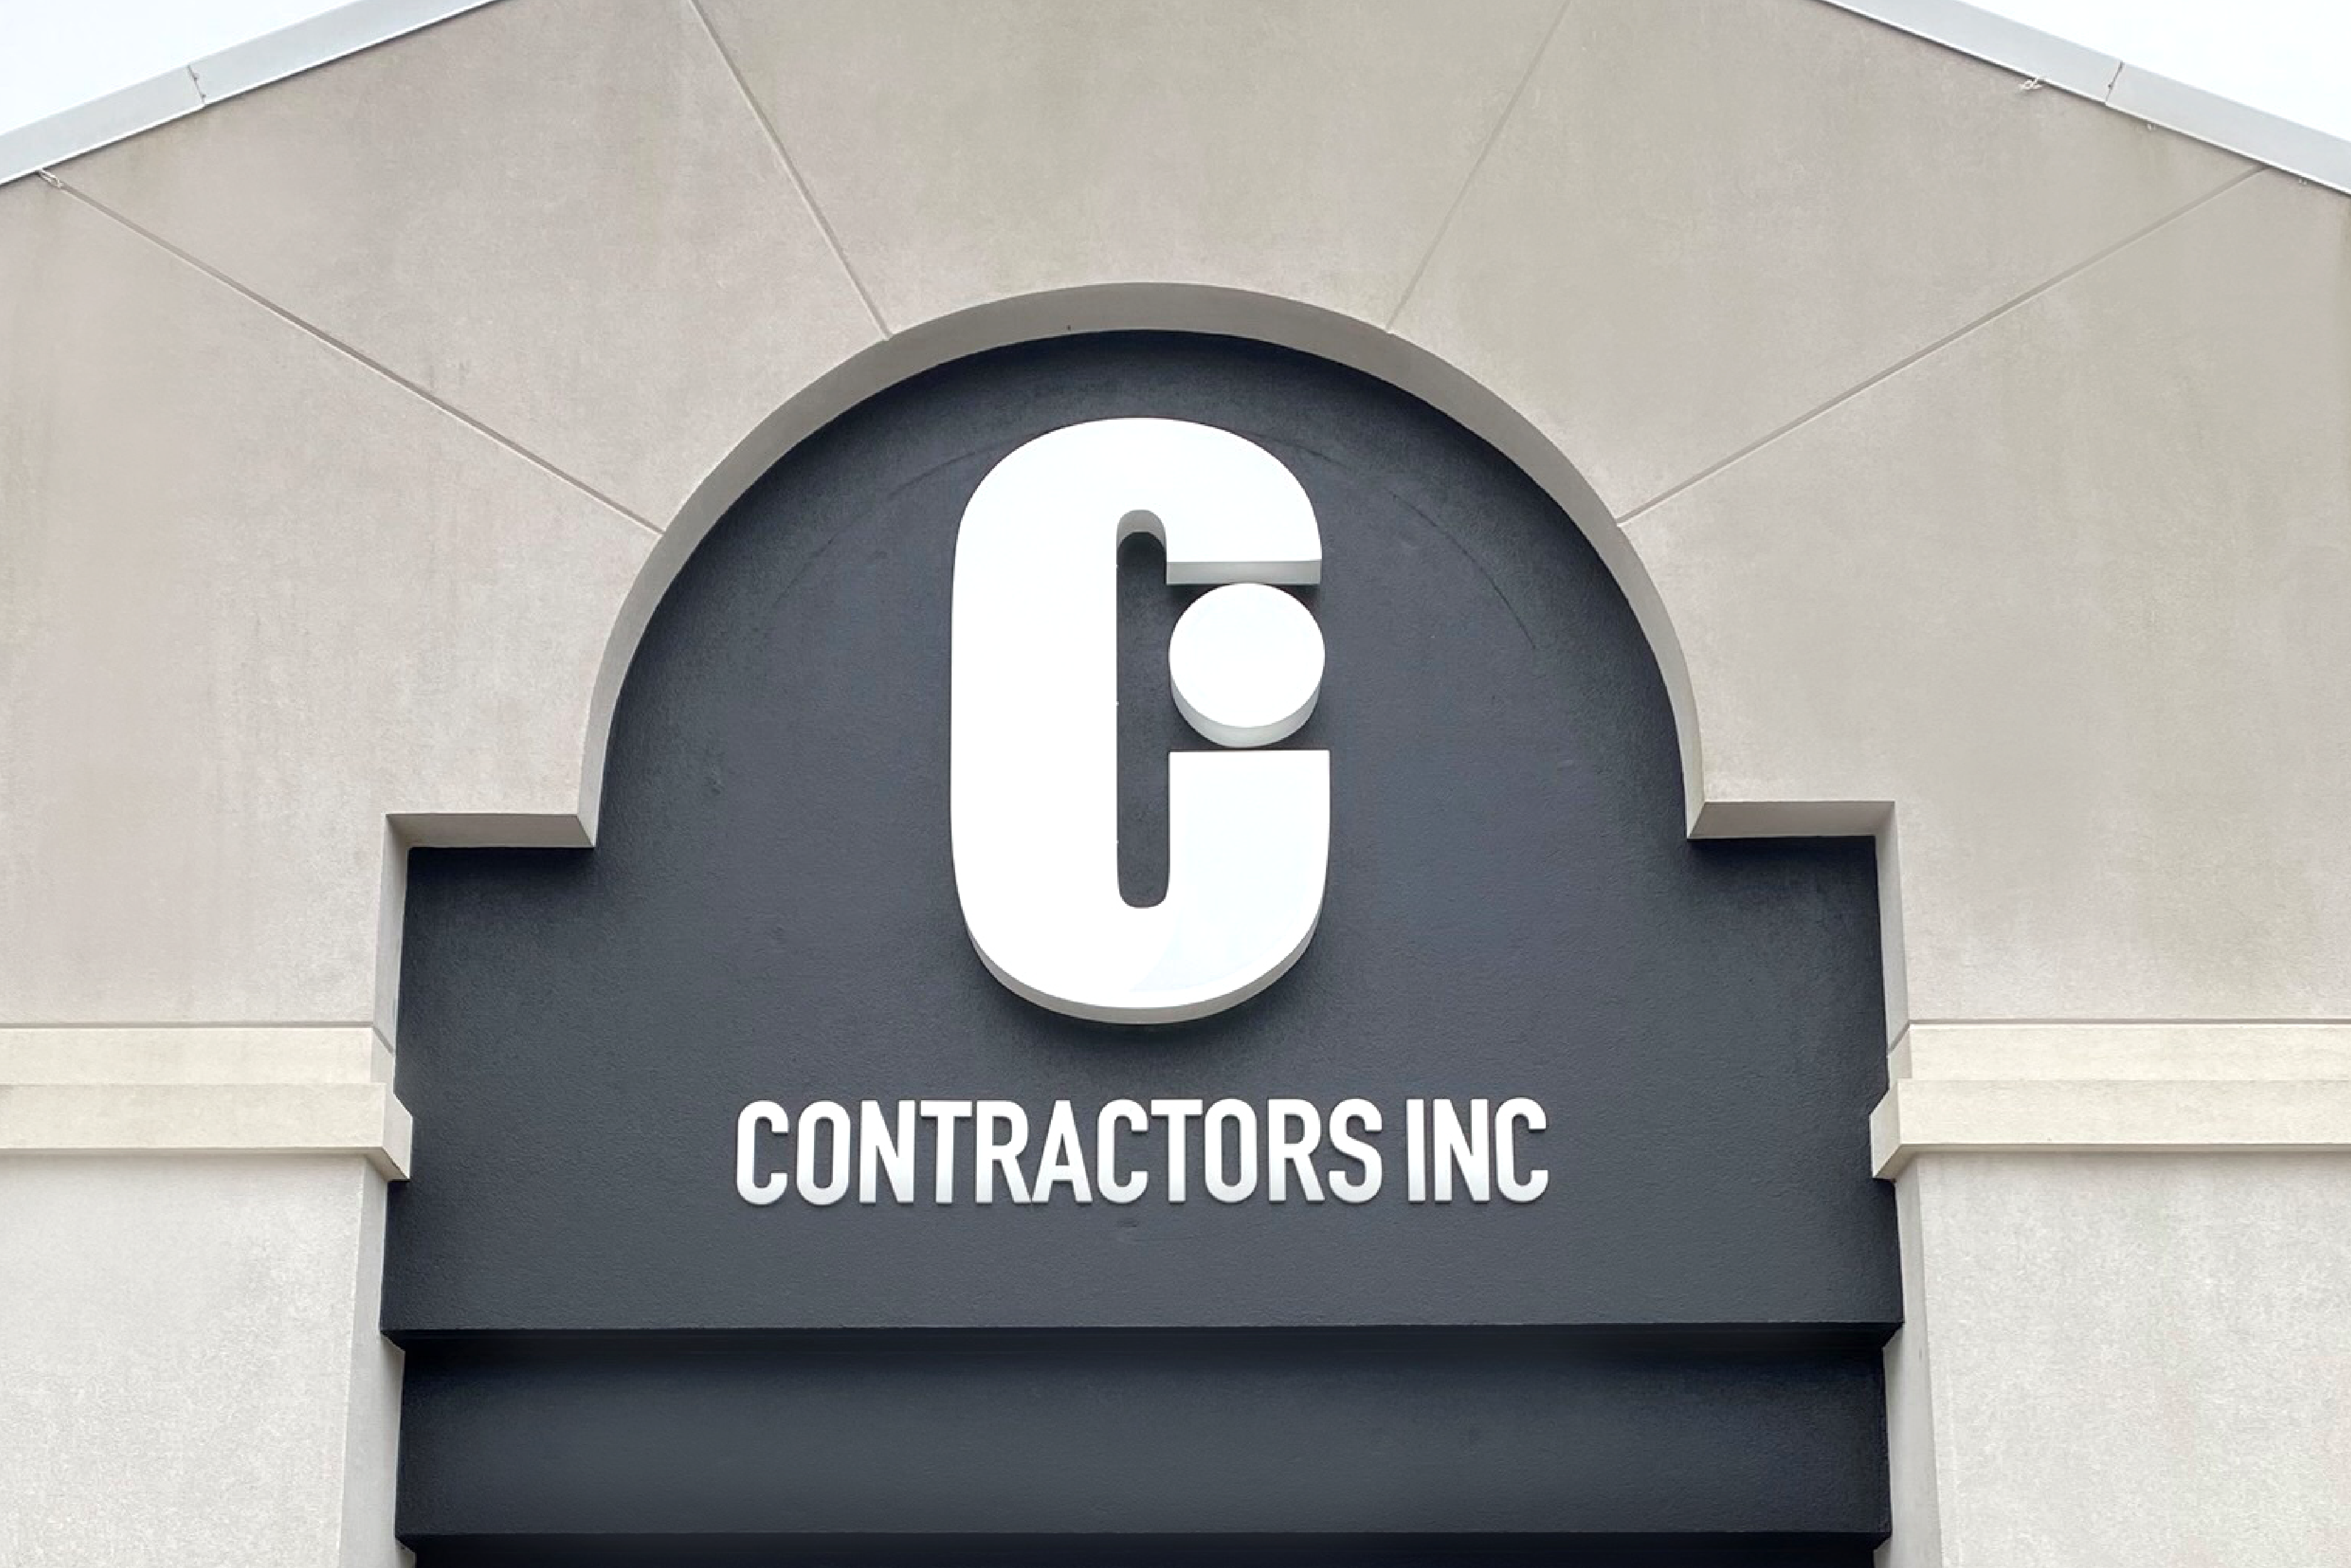 Contractors Inc